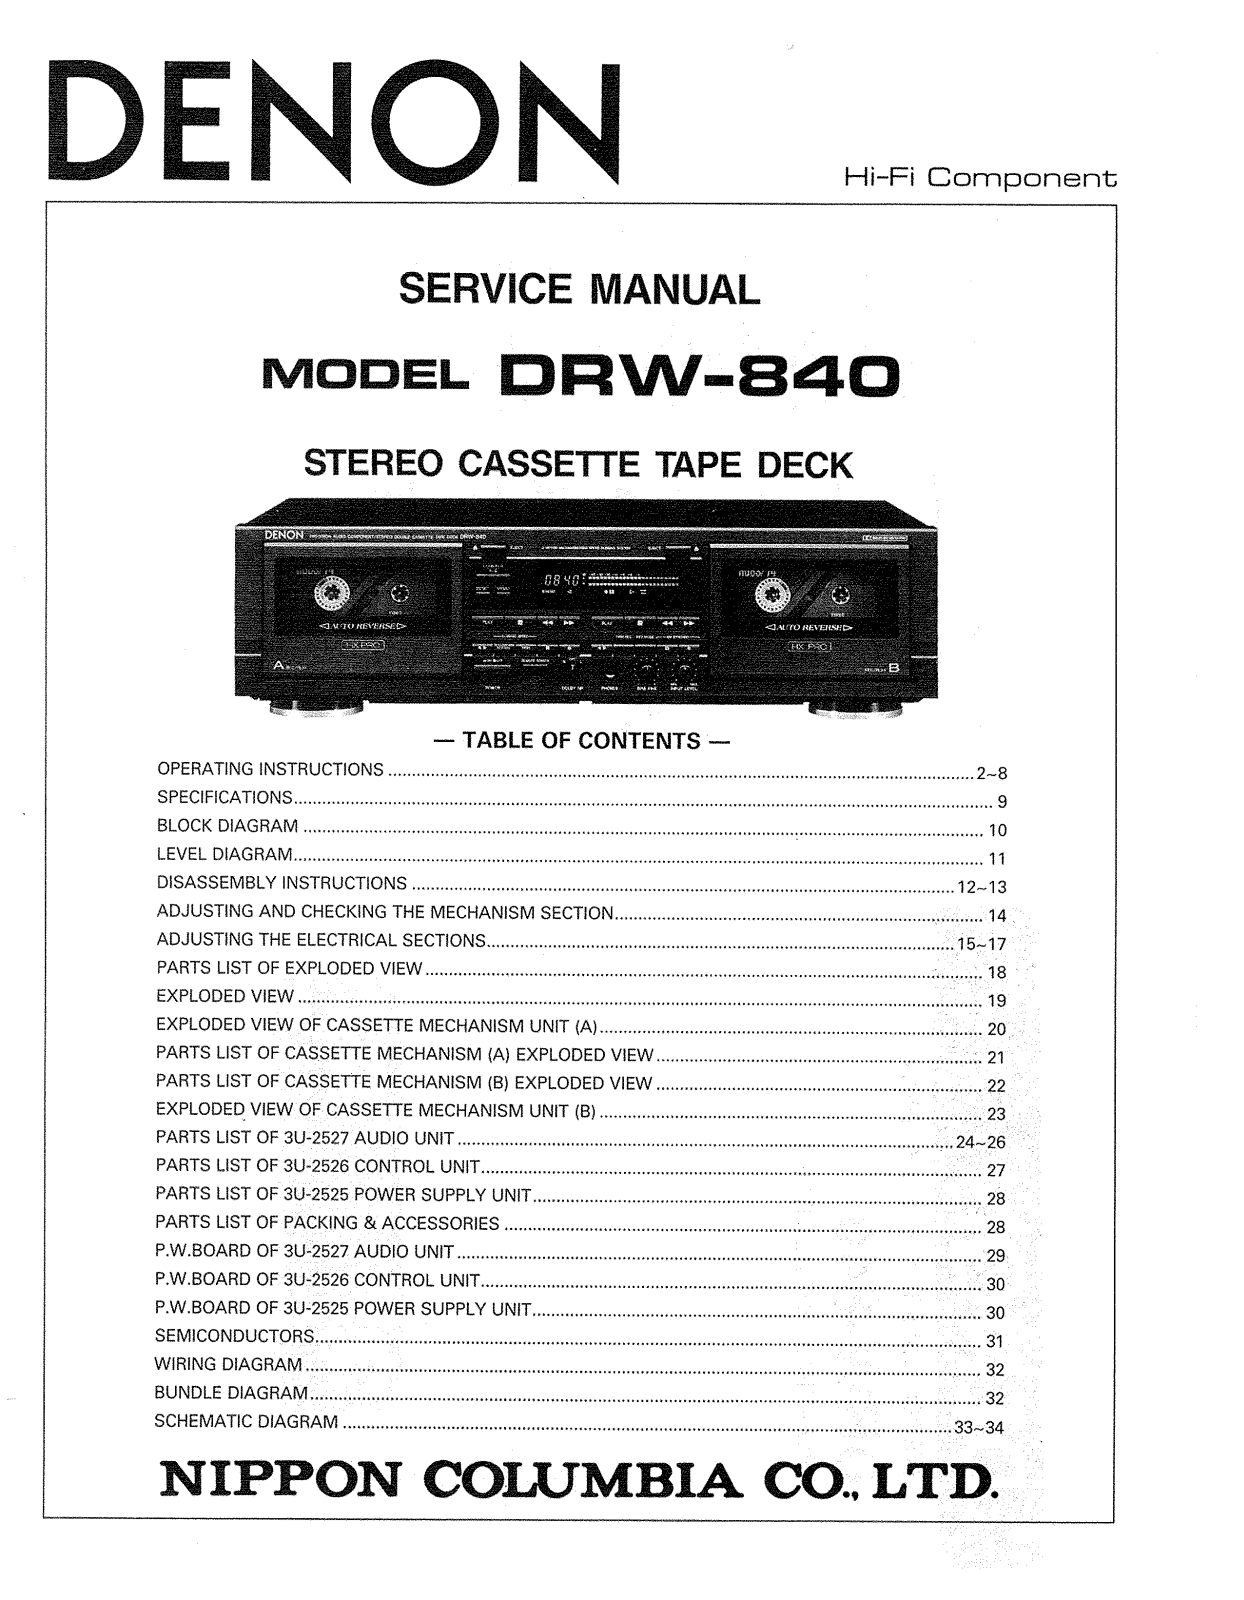 Denon DRW-840 Service Manual